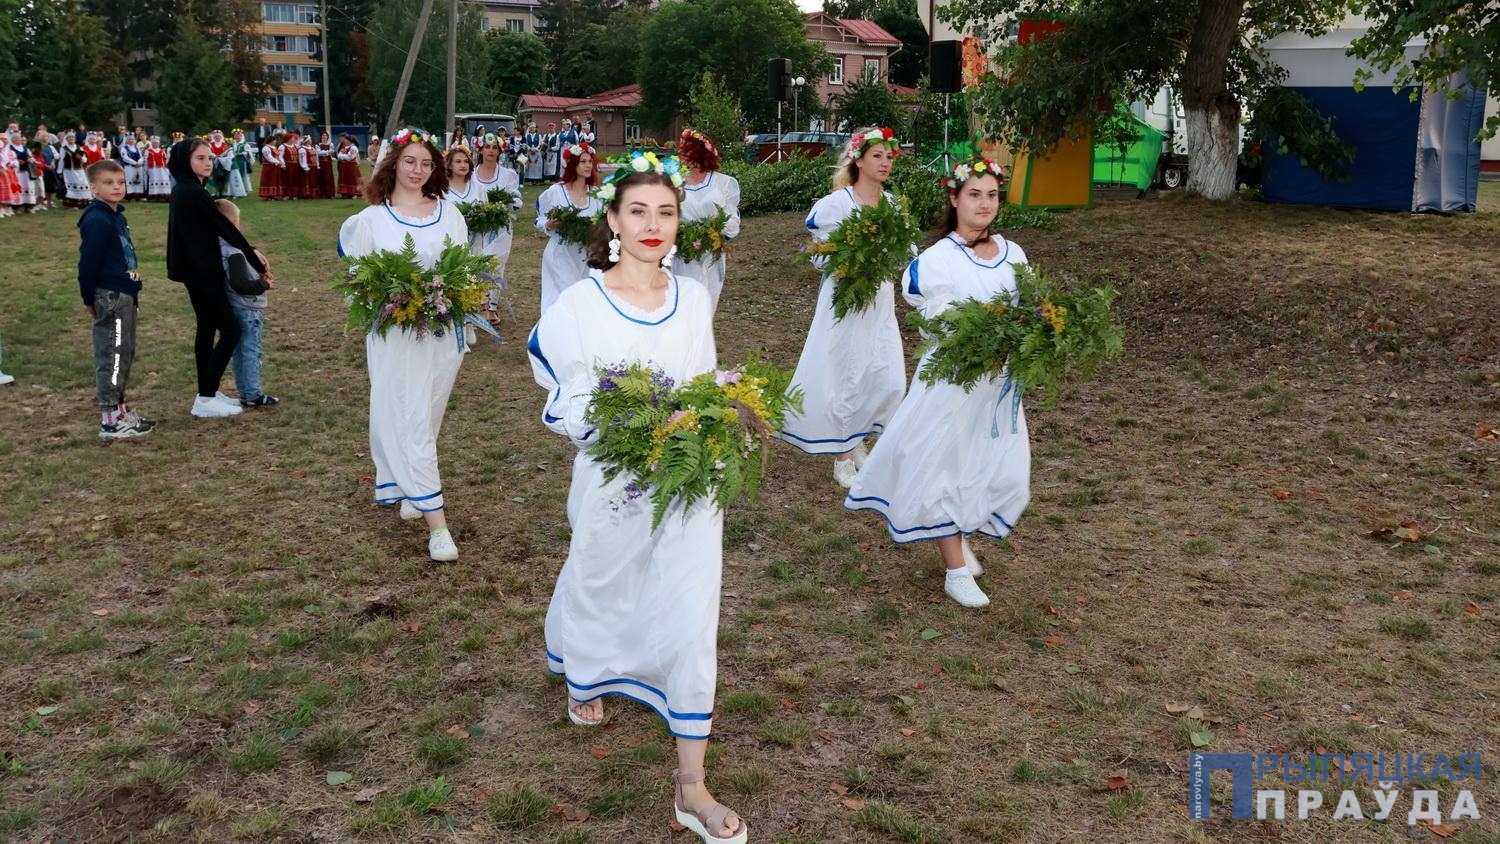 Традиционный праздник Купалье прошел в Наровле